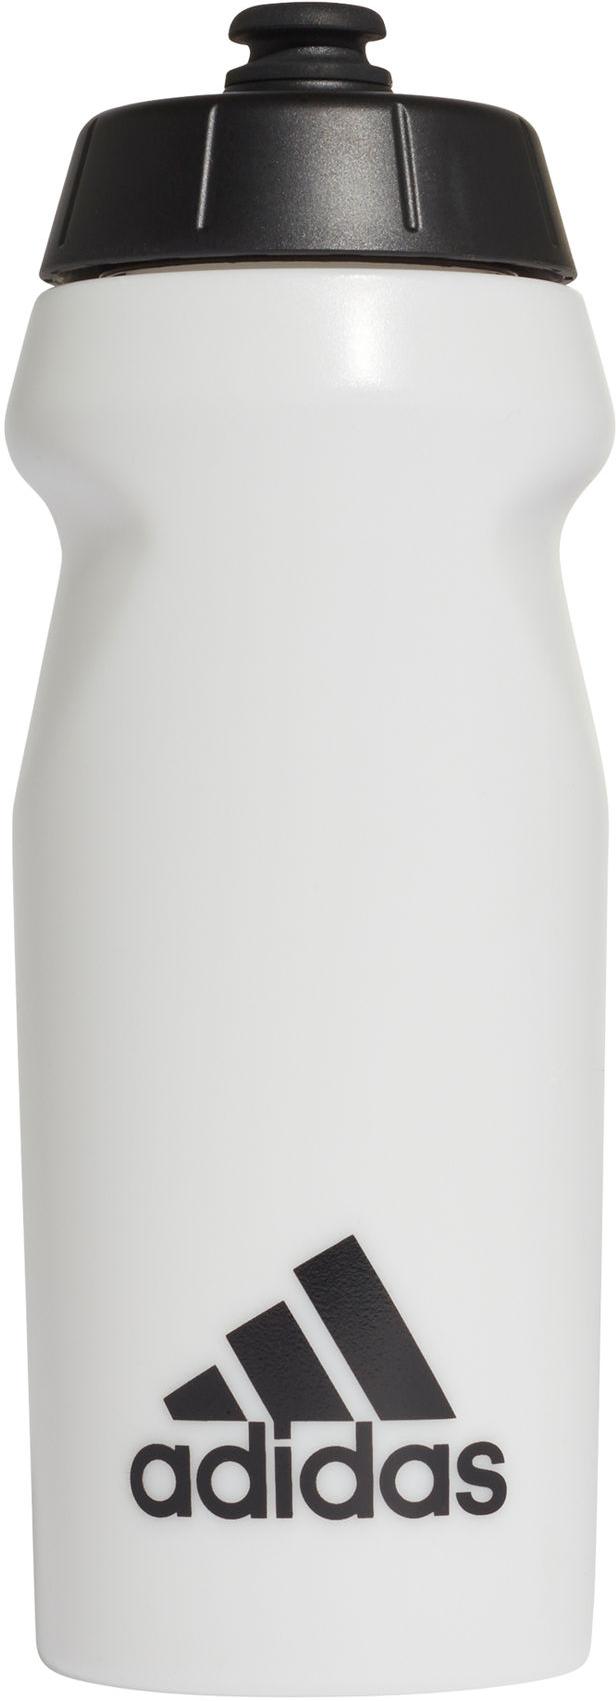 Garrafa illusion adidas PERF BTTL 0,5